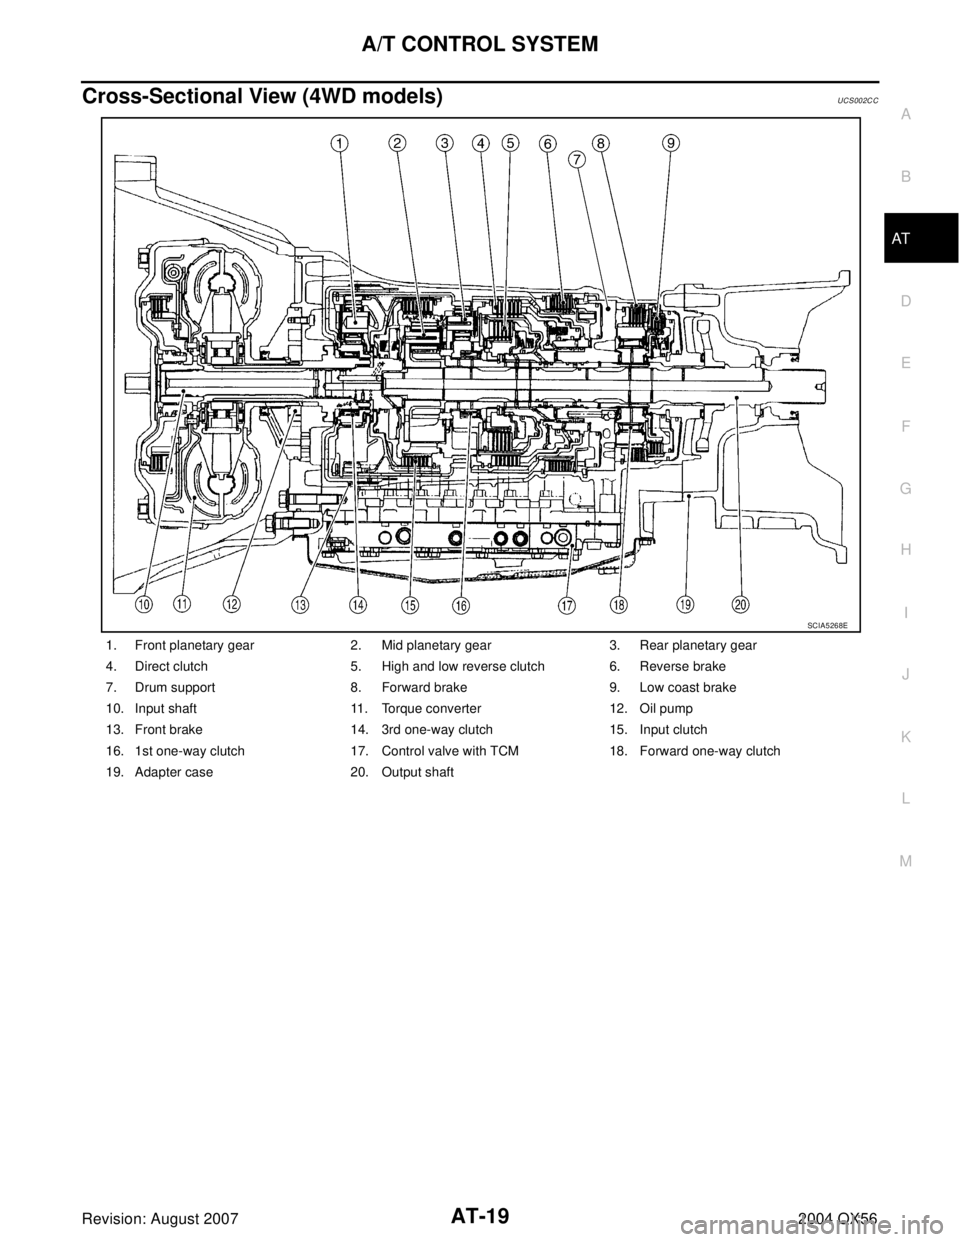 INFINITI QX56 2004  Factory Service Manual A/T CONTROL SYSTEM
AT-19
D
E
F
G
H
I
J
K
L
MA
B
AT
Revision: August 20072004 QX56
Cross-Sectional View (4WD models)UCS002C C
1. Front planetary gear 2. Mid planetary gear 3. Rear planetary gear
4. Dir